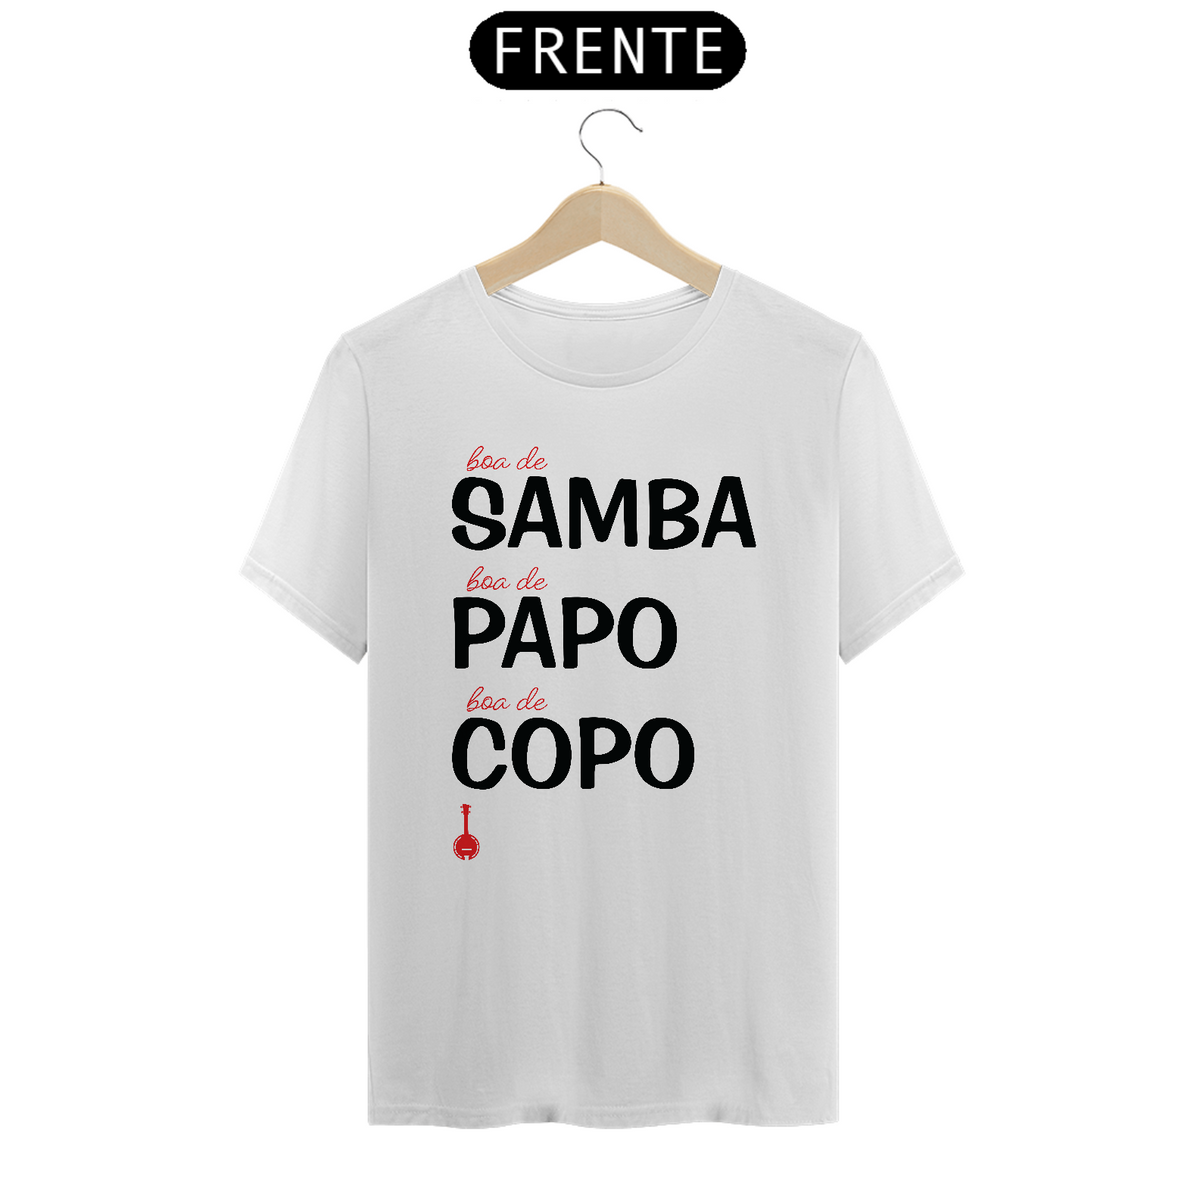 Nome do produto: Camiseta Boa de Samba, Boa de Papo, Bam de Copo - Branca